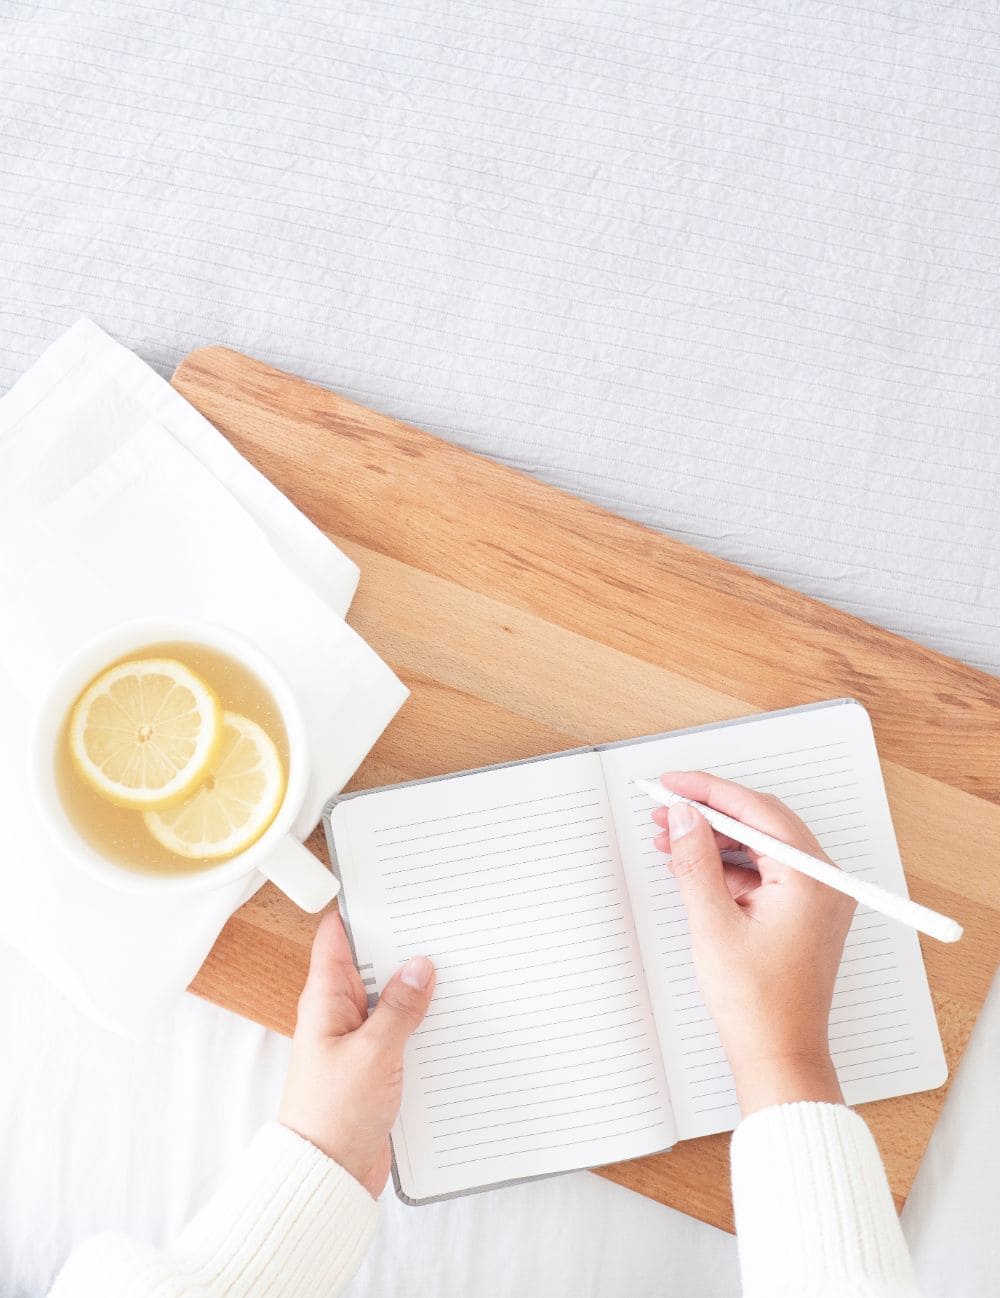 Lemon tea, hand holding pen and journal